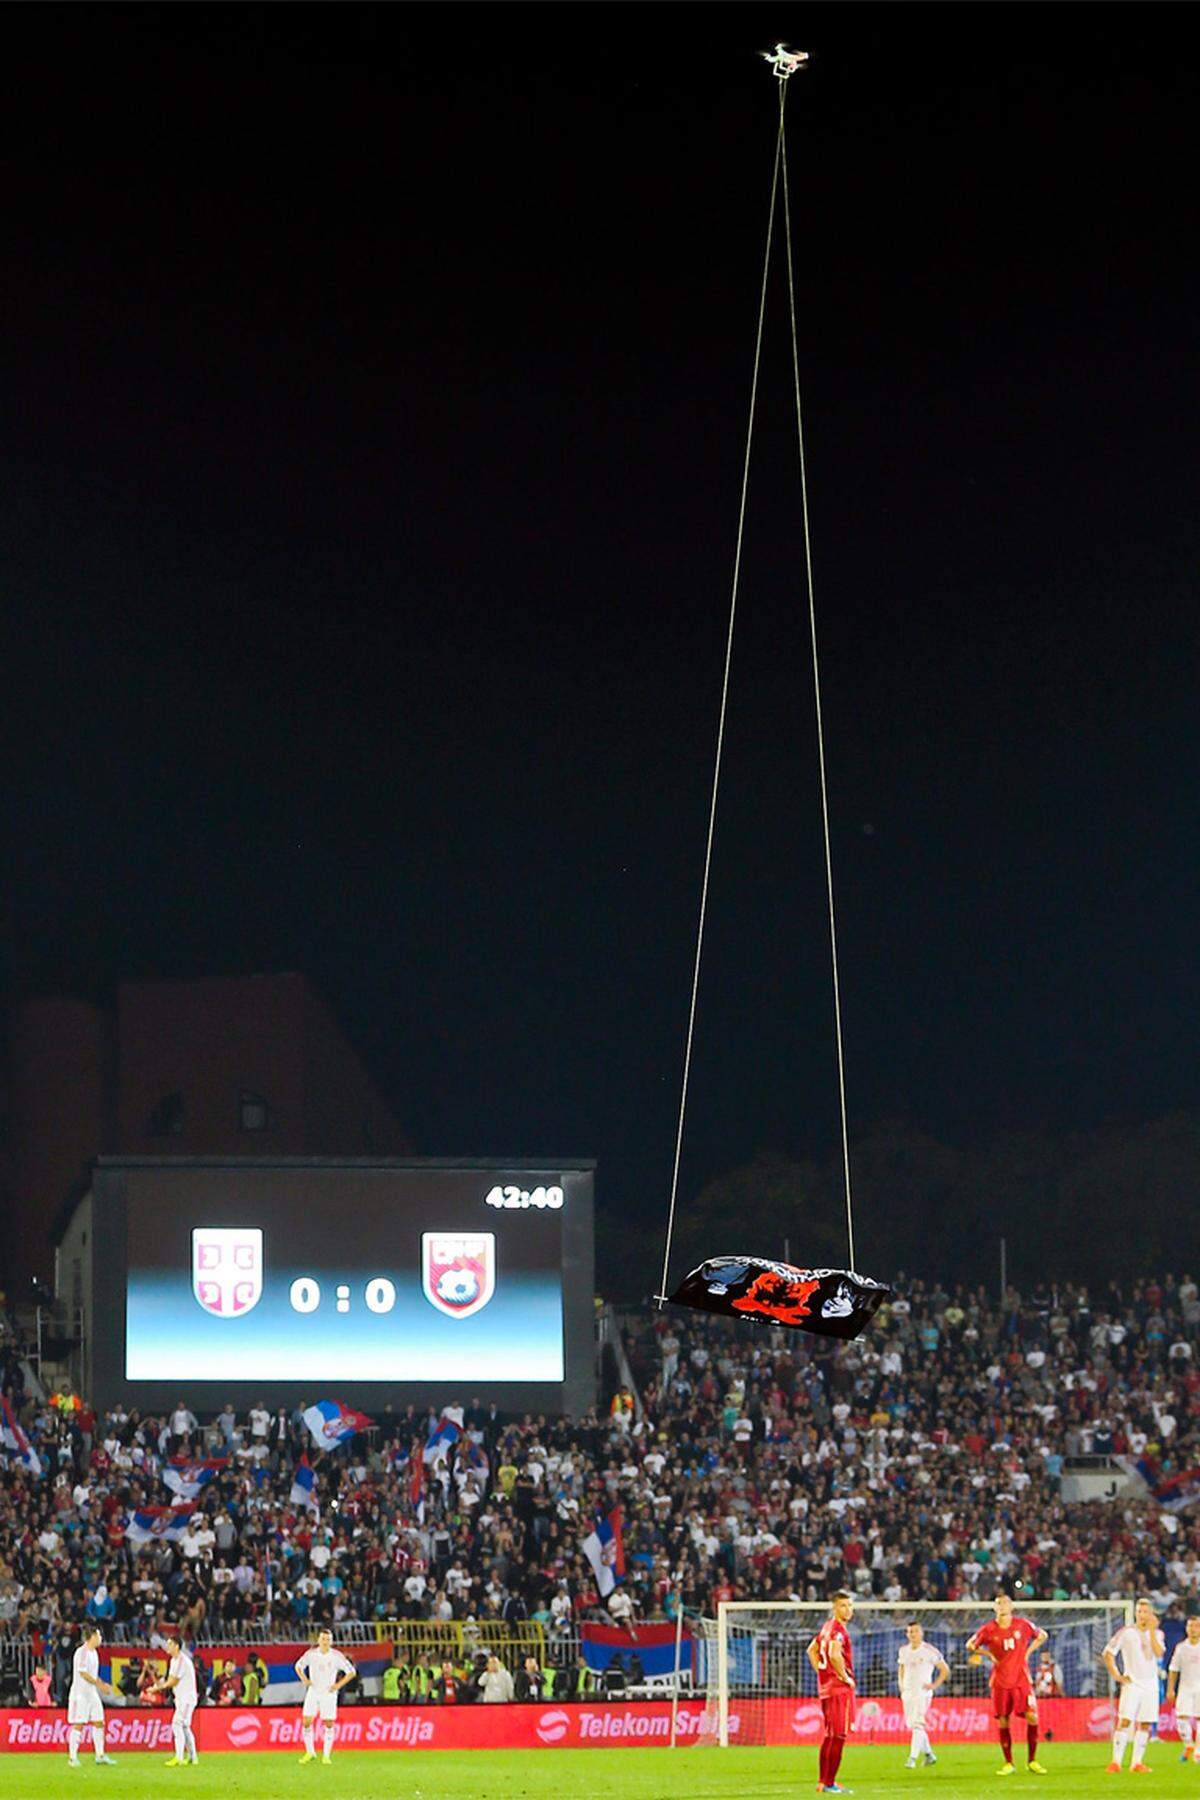 EM-Qualifikationsspiel Serbien-Albanien am Dienstagabend. In der 42. Minute taucht über dem Stadion eine Drohne auf.